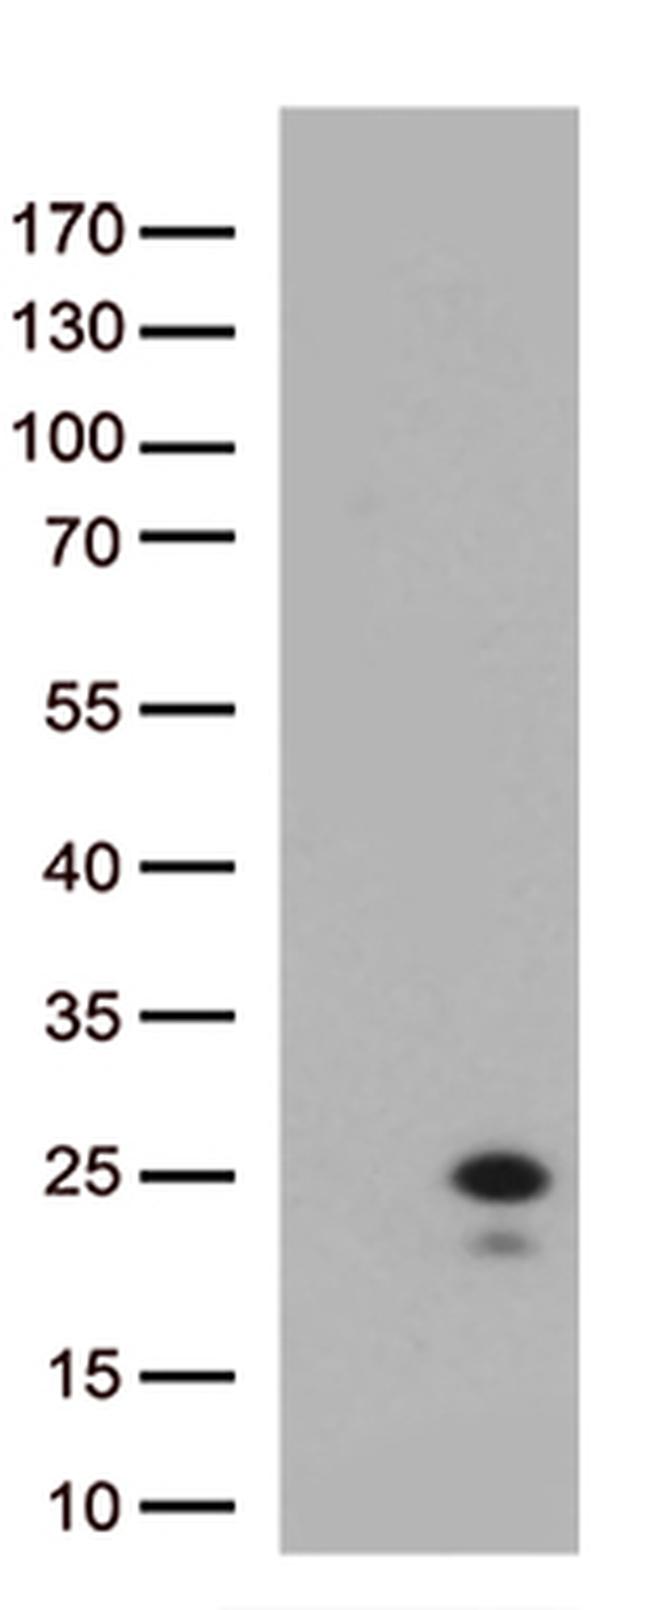 IL29 (IFNL1) Antibody in Western Blot (WB)